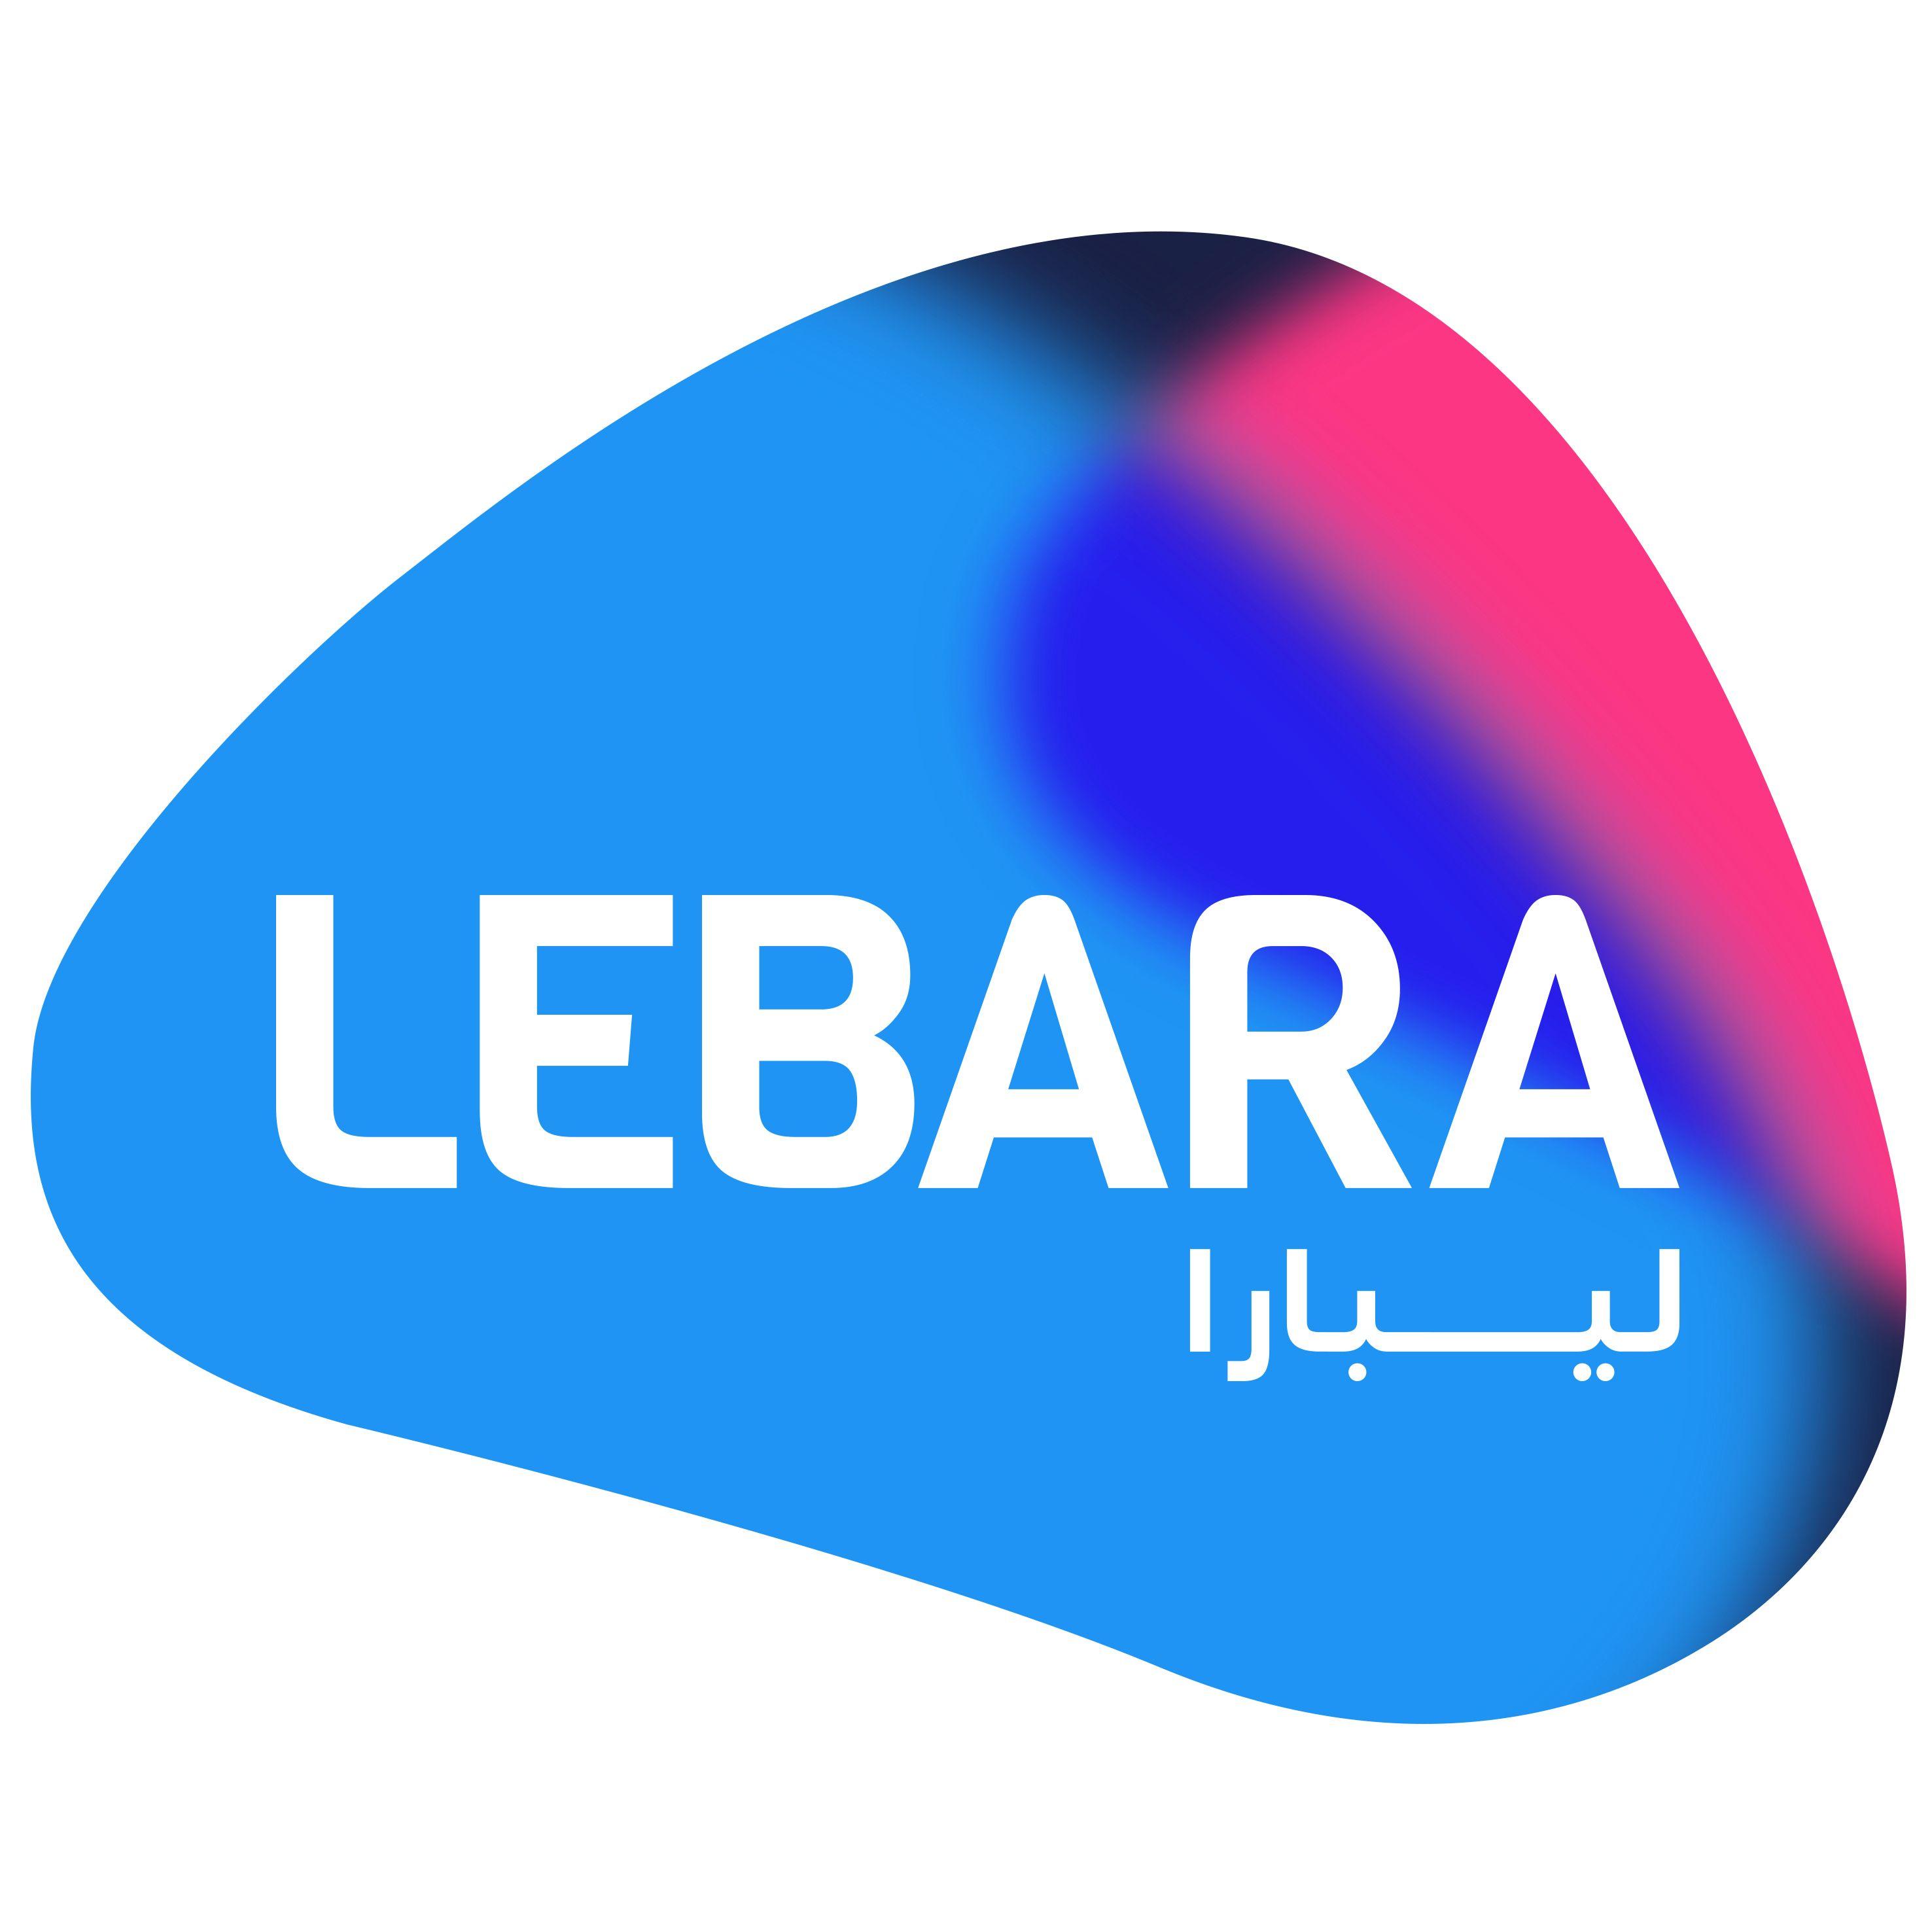 Lebara Mobile KSA